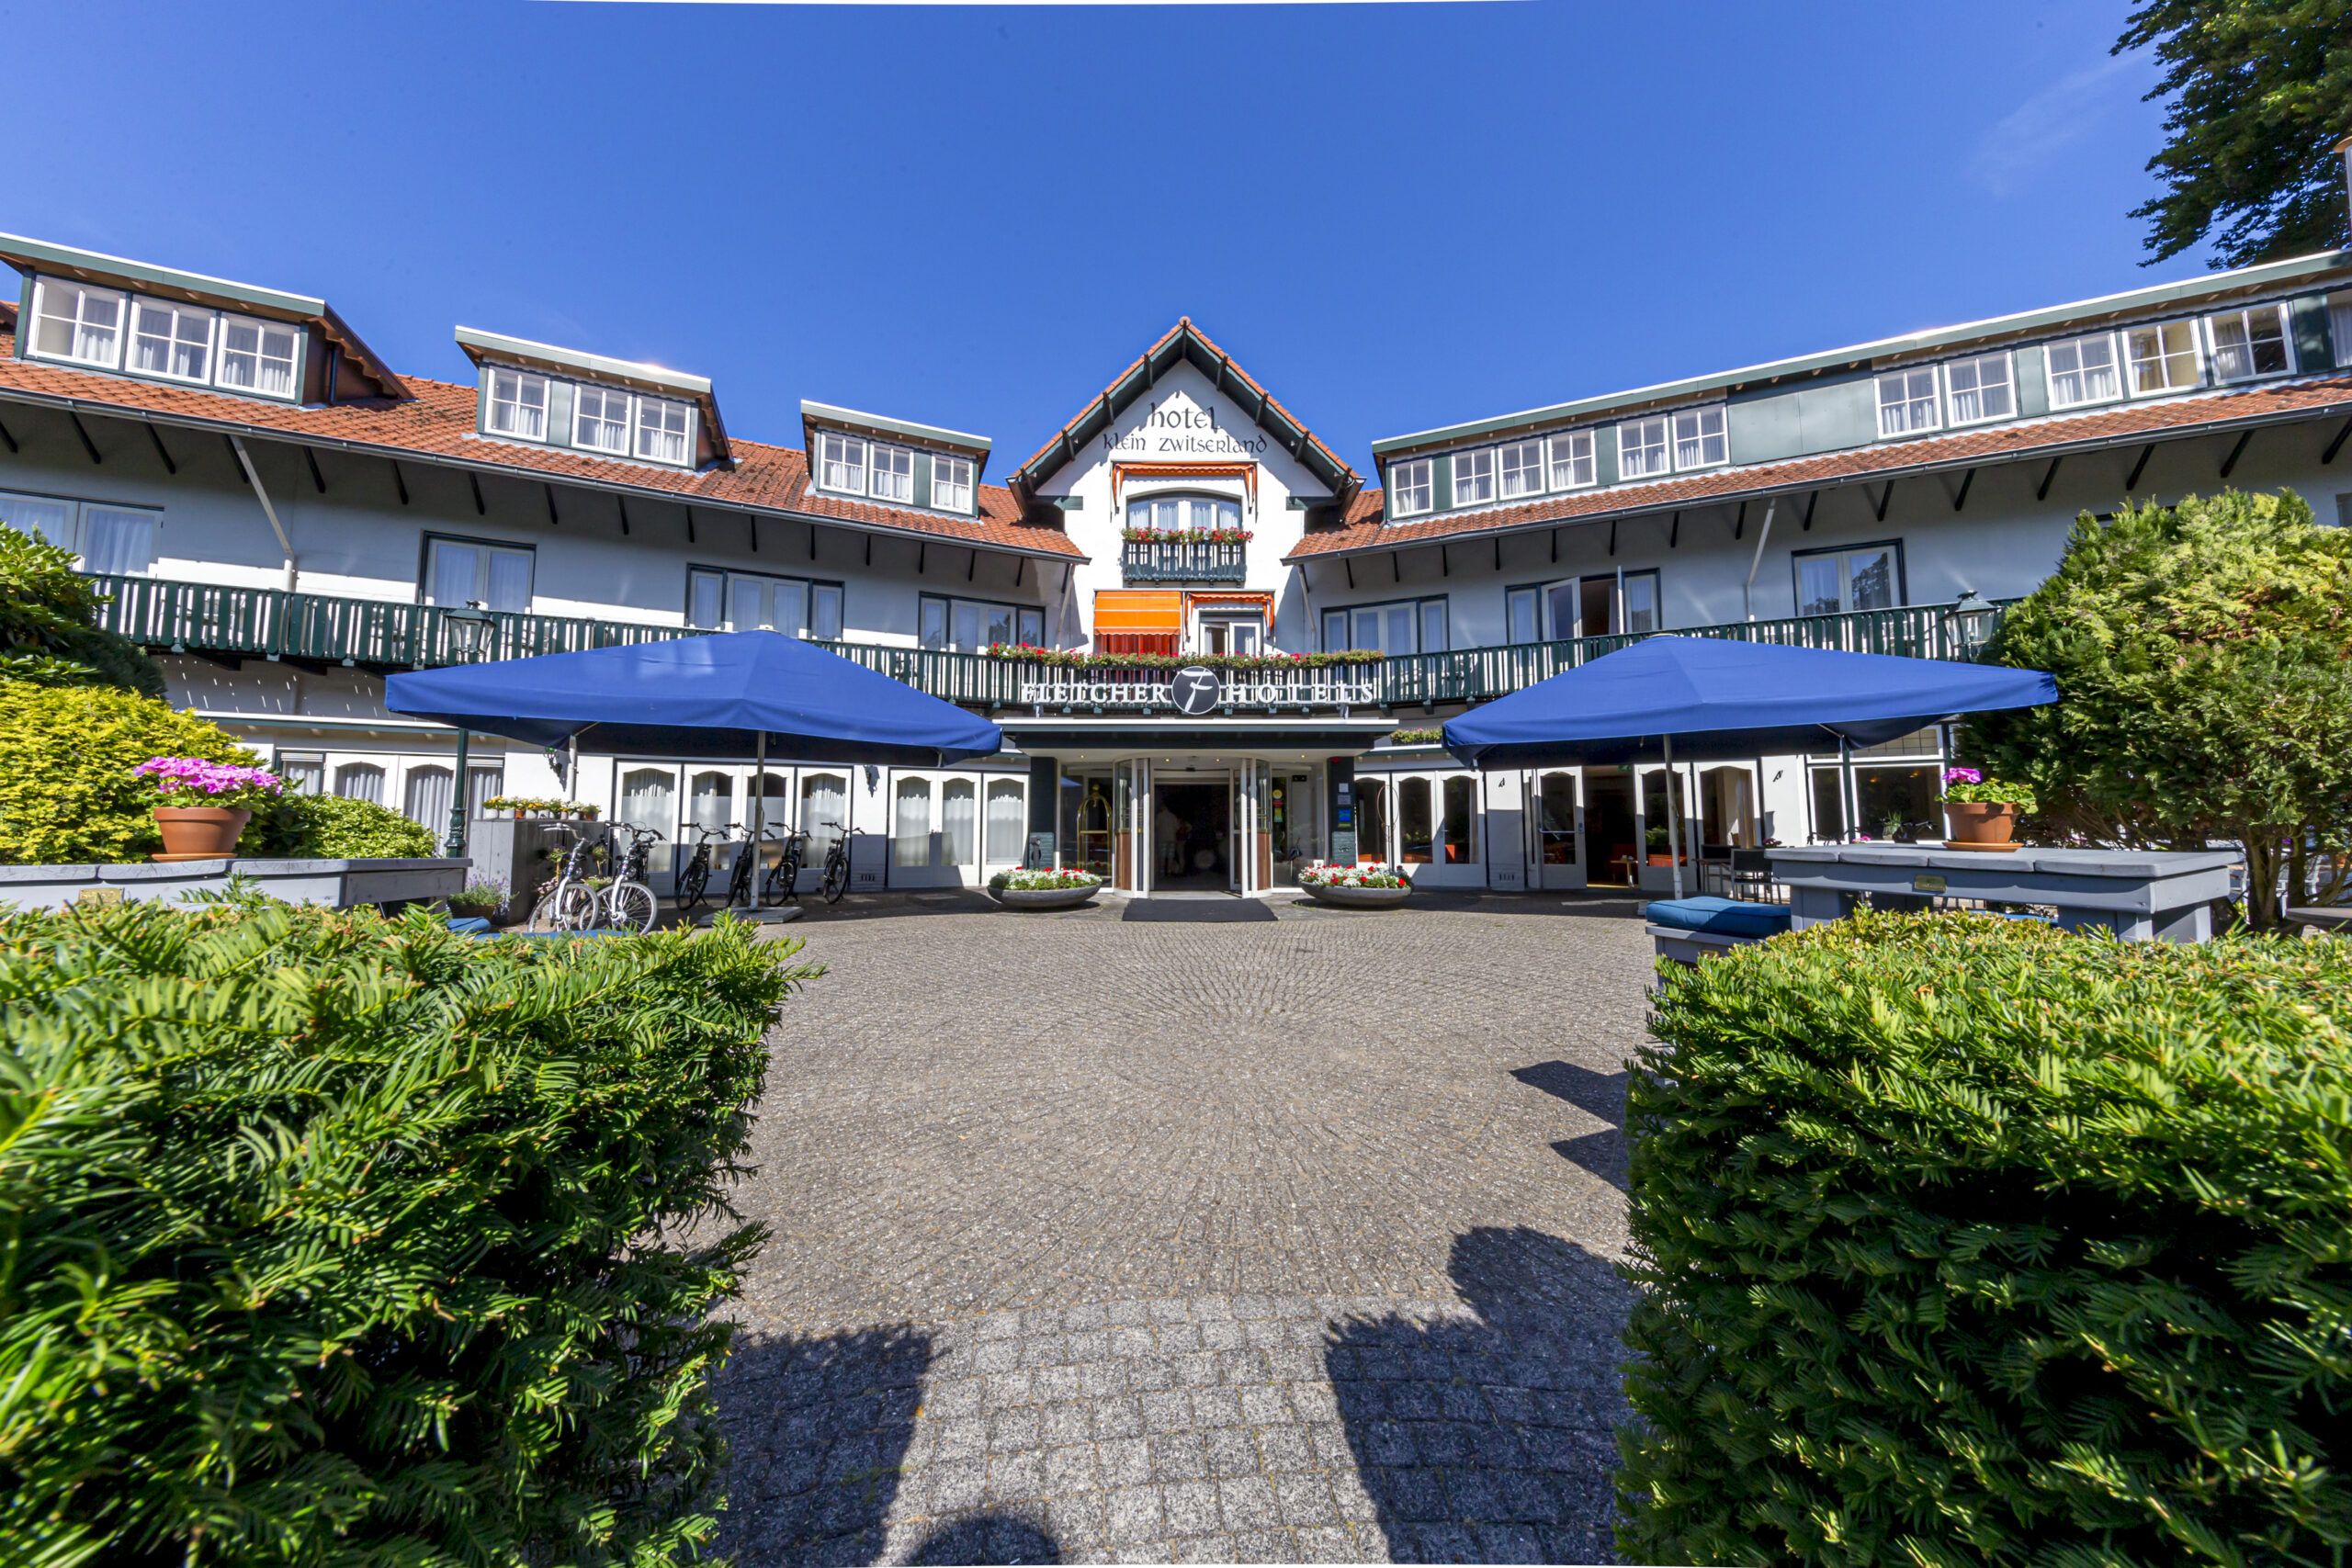 Fletcher Hotel-Restaurant Klein Zwitserland - Heelsum - Nederland